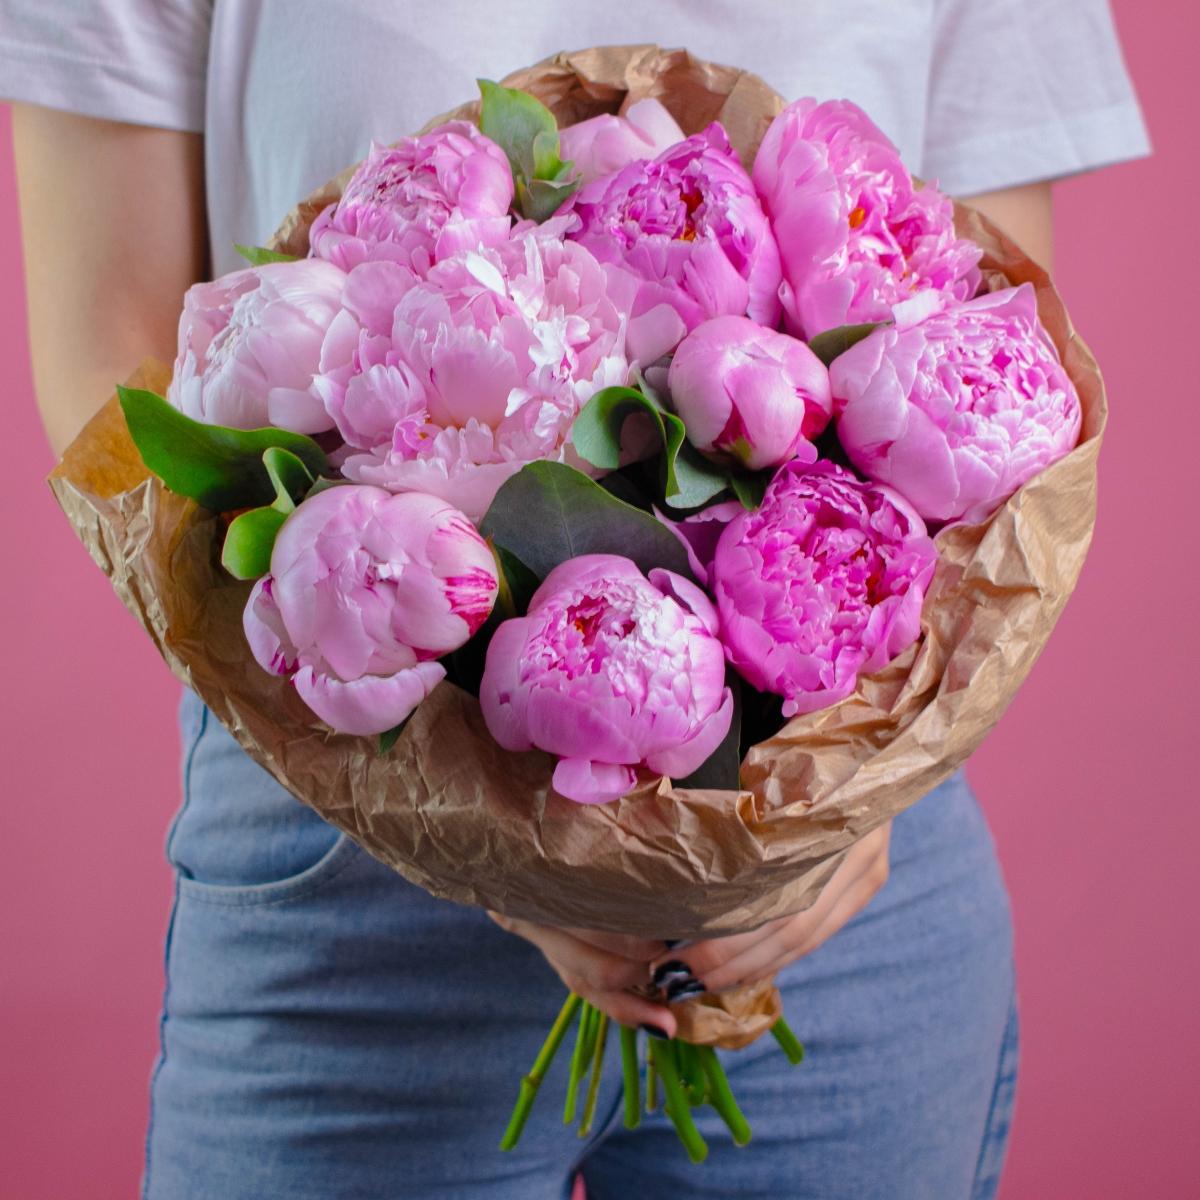 11 розовых пионов с эвкалиптом